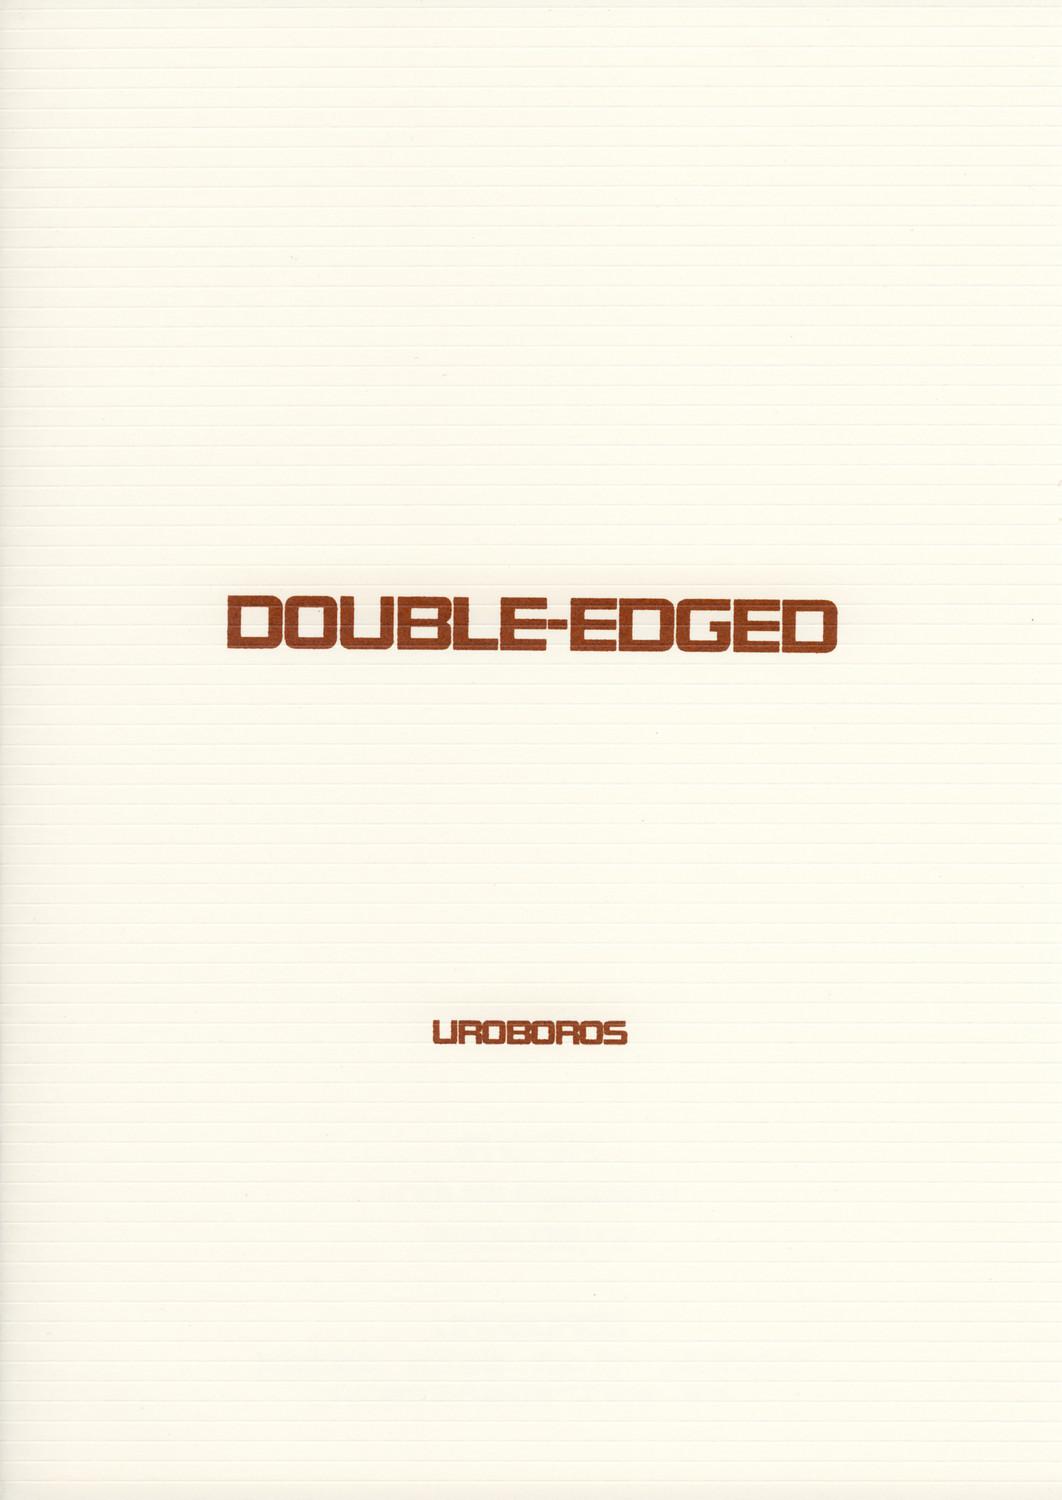 DOUBLE-EDGED 45